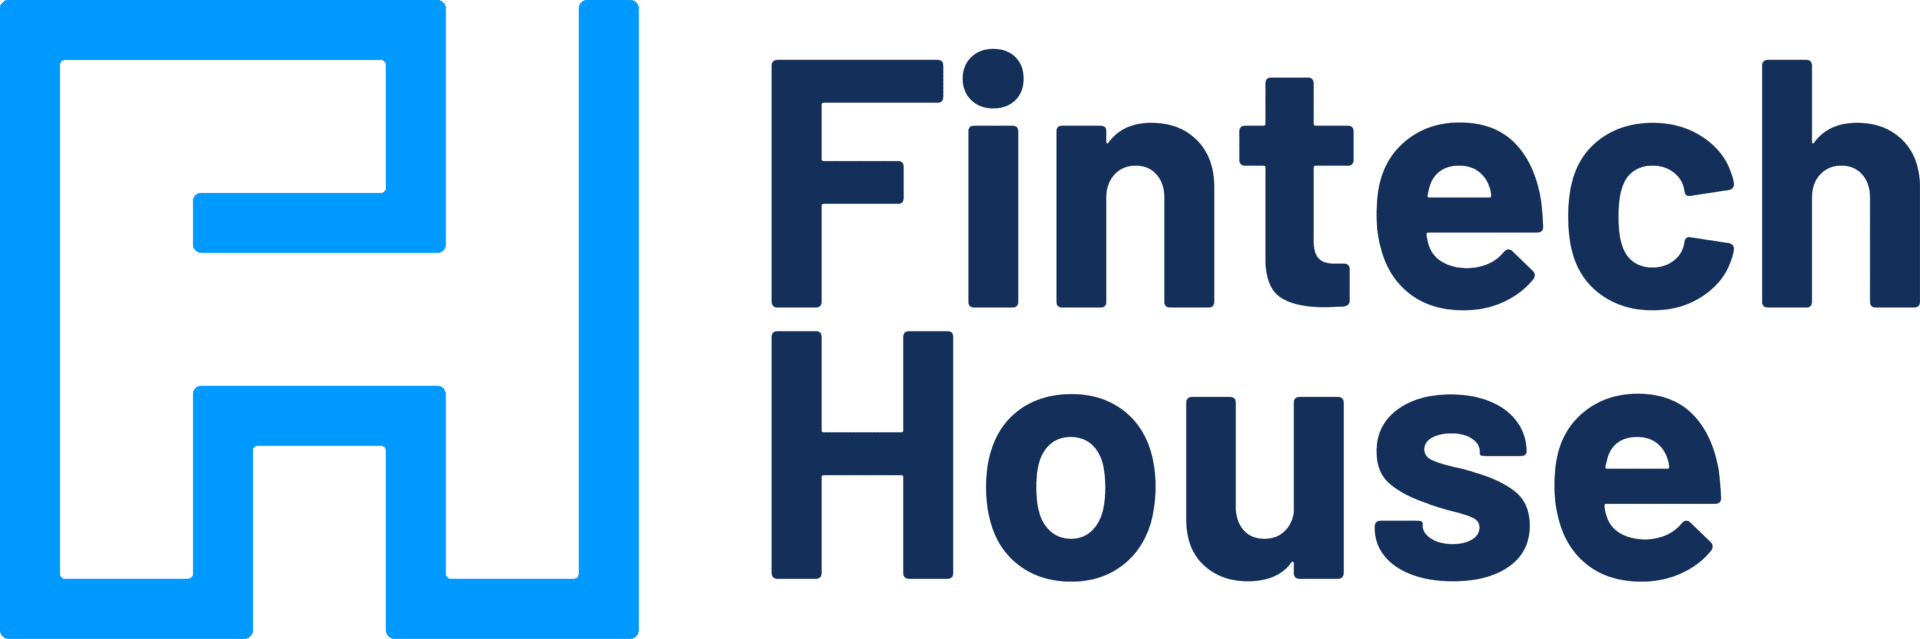 fintech house logo